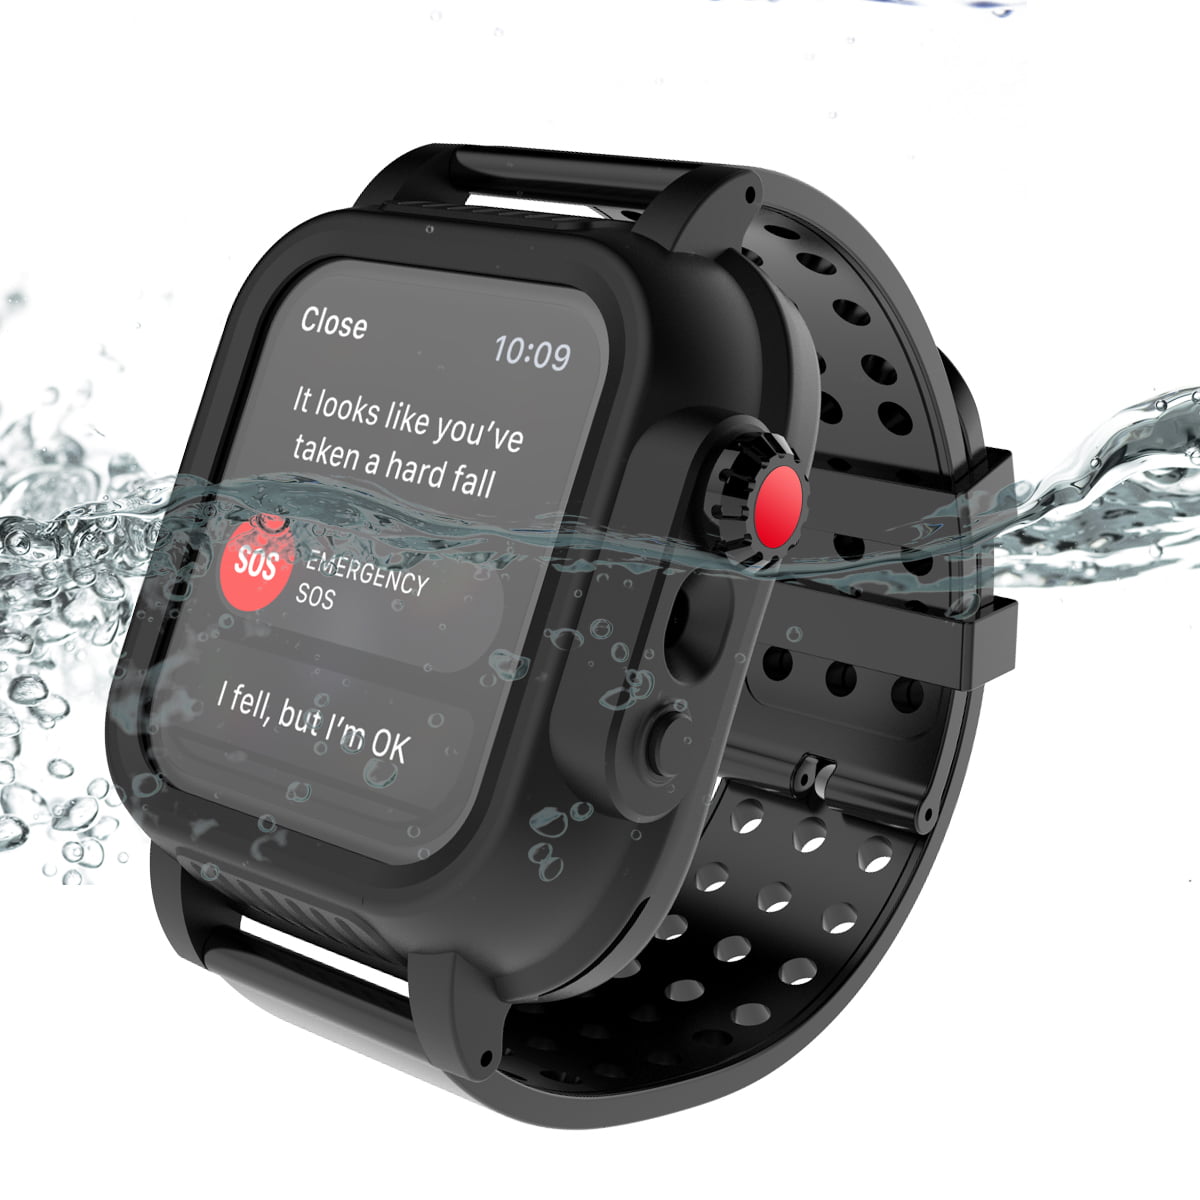 is series 3 apple watch water resistant